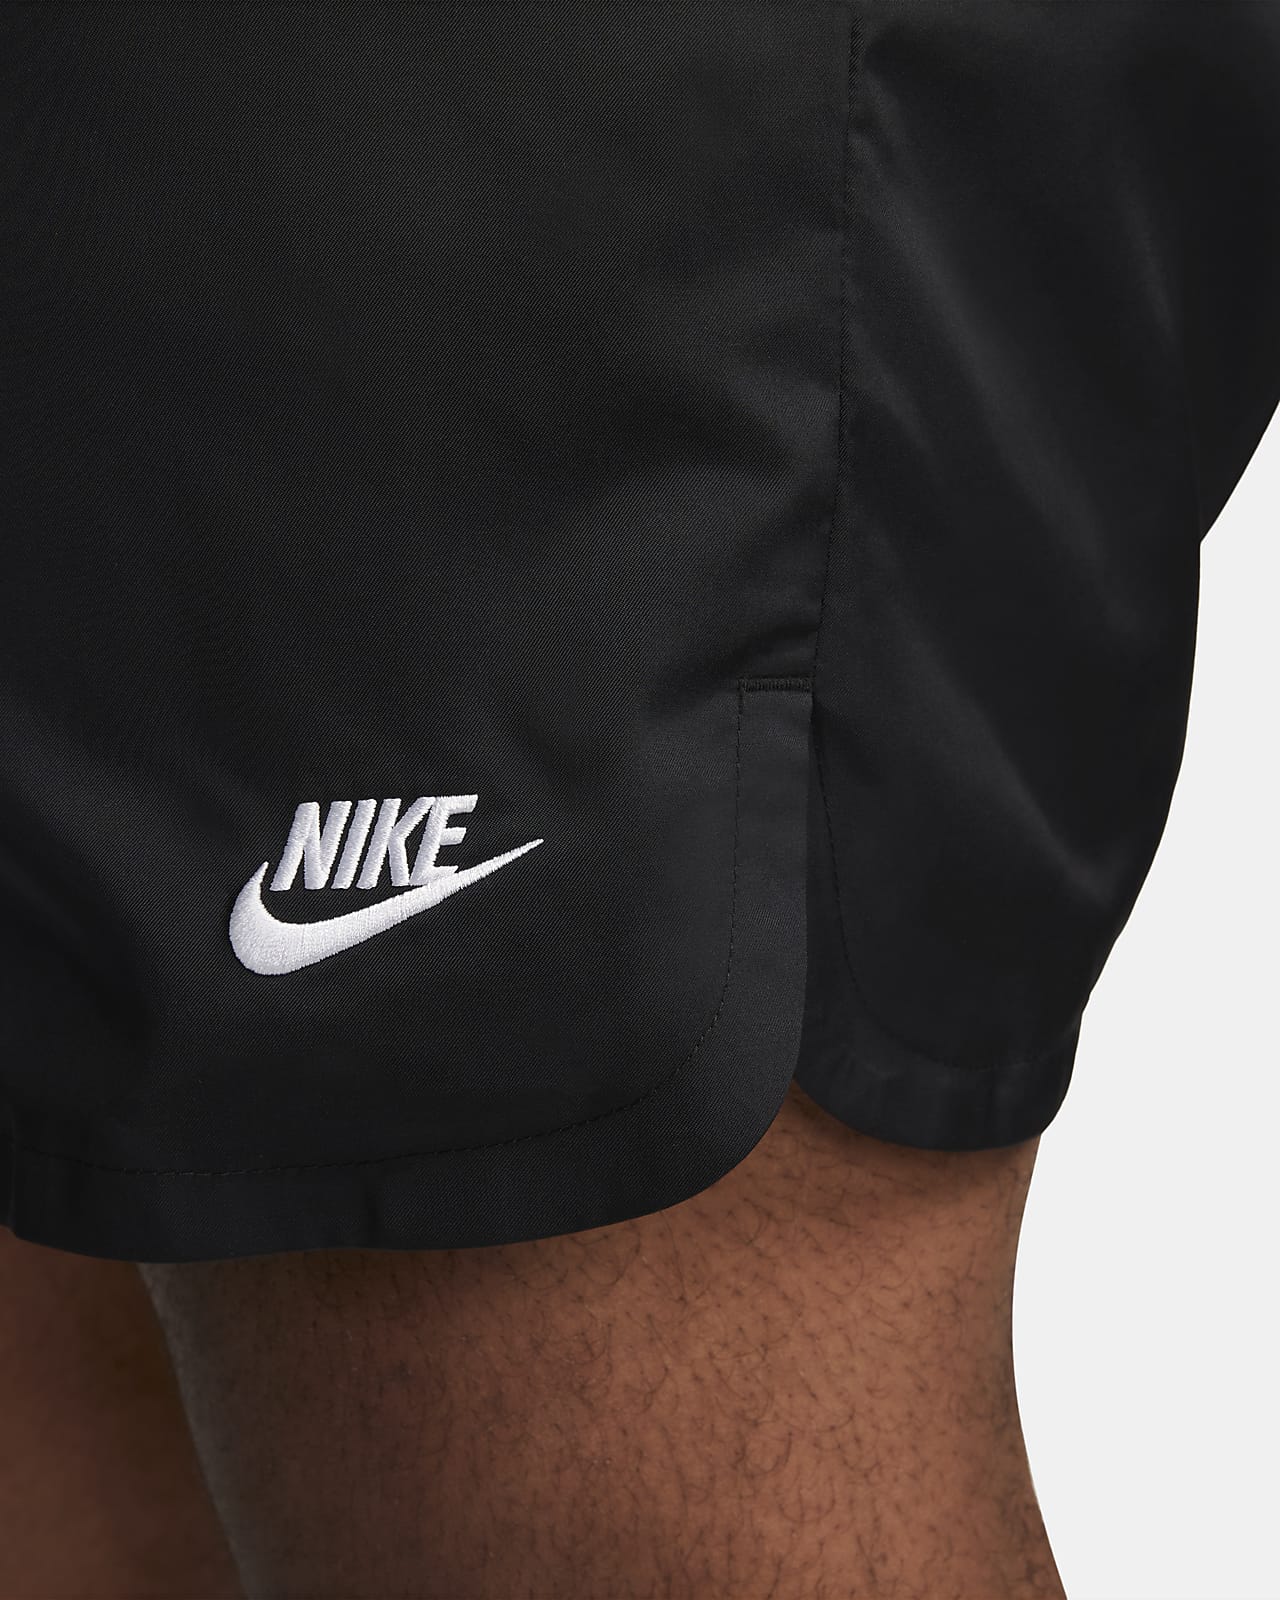 Nike Sportswear Men's Woven Shorts. Nike CH